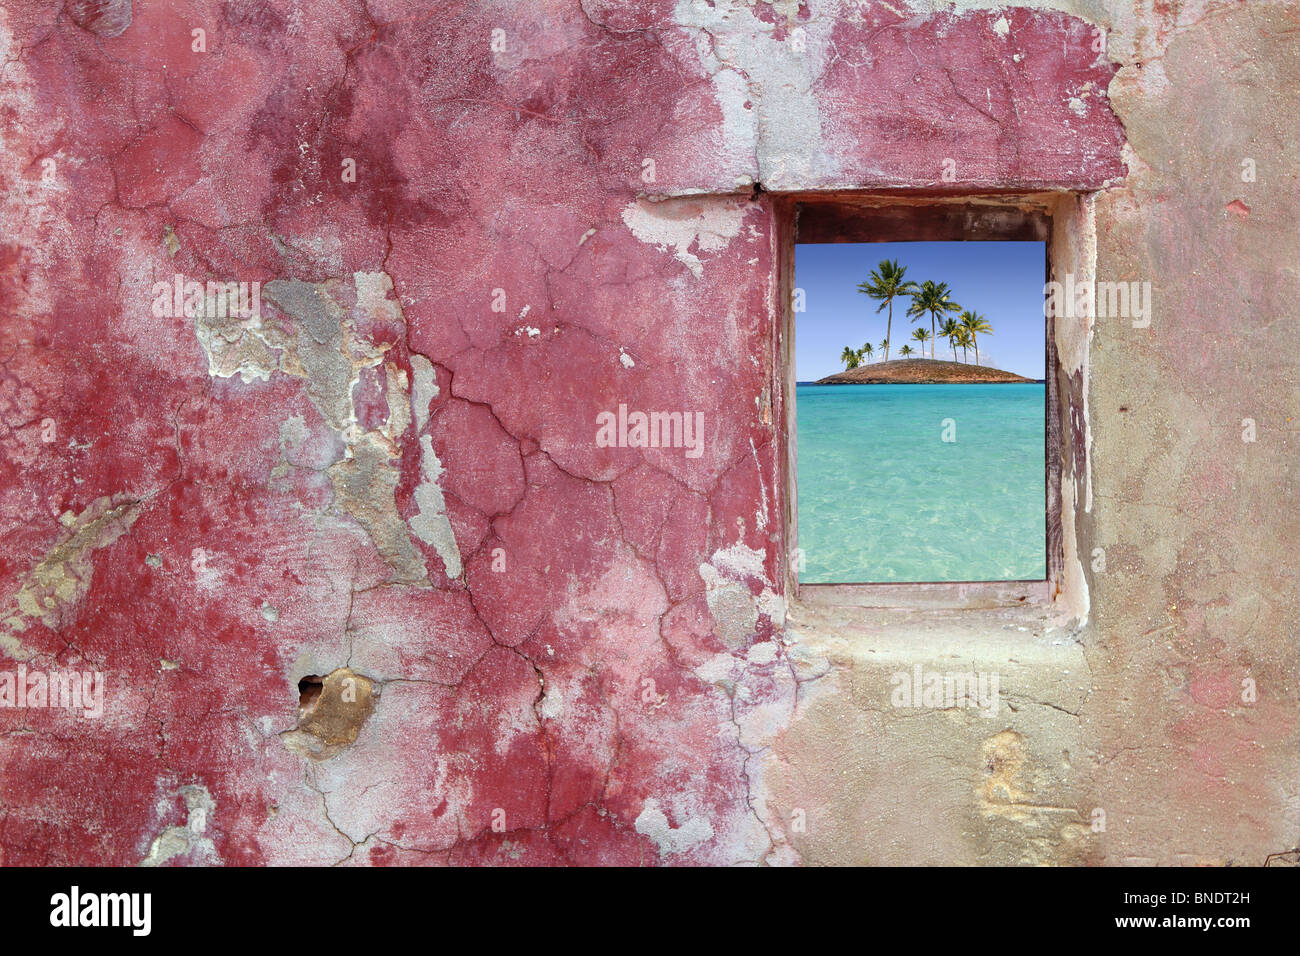 Grunge mur rouge rose fenêtre bois topical palmiers et vue sur l'ile. Banque D'Images